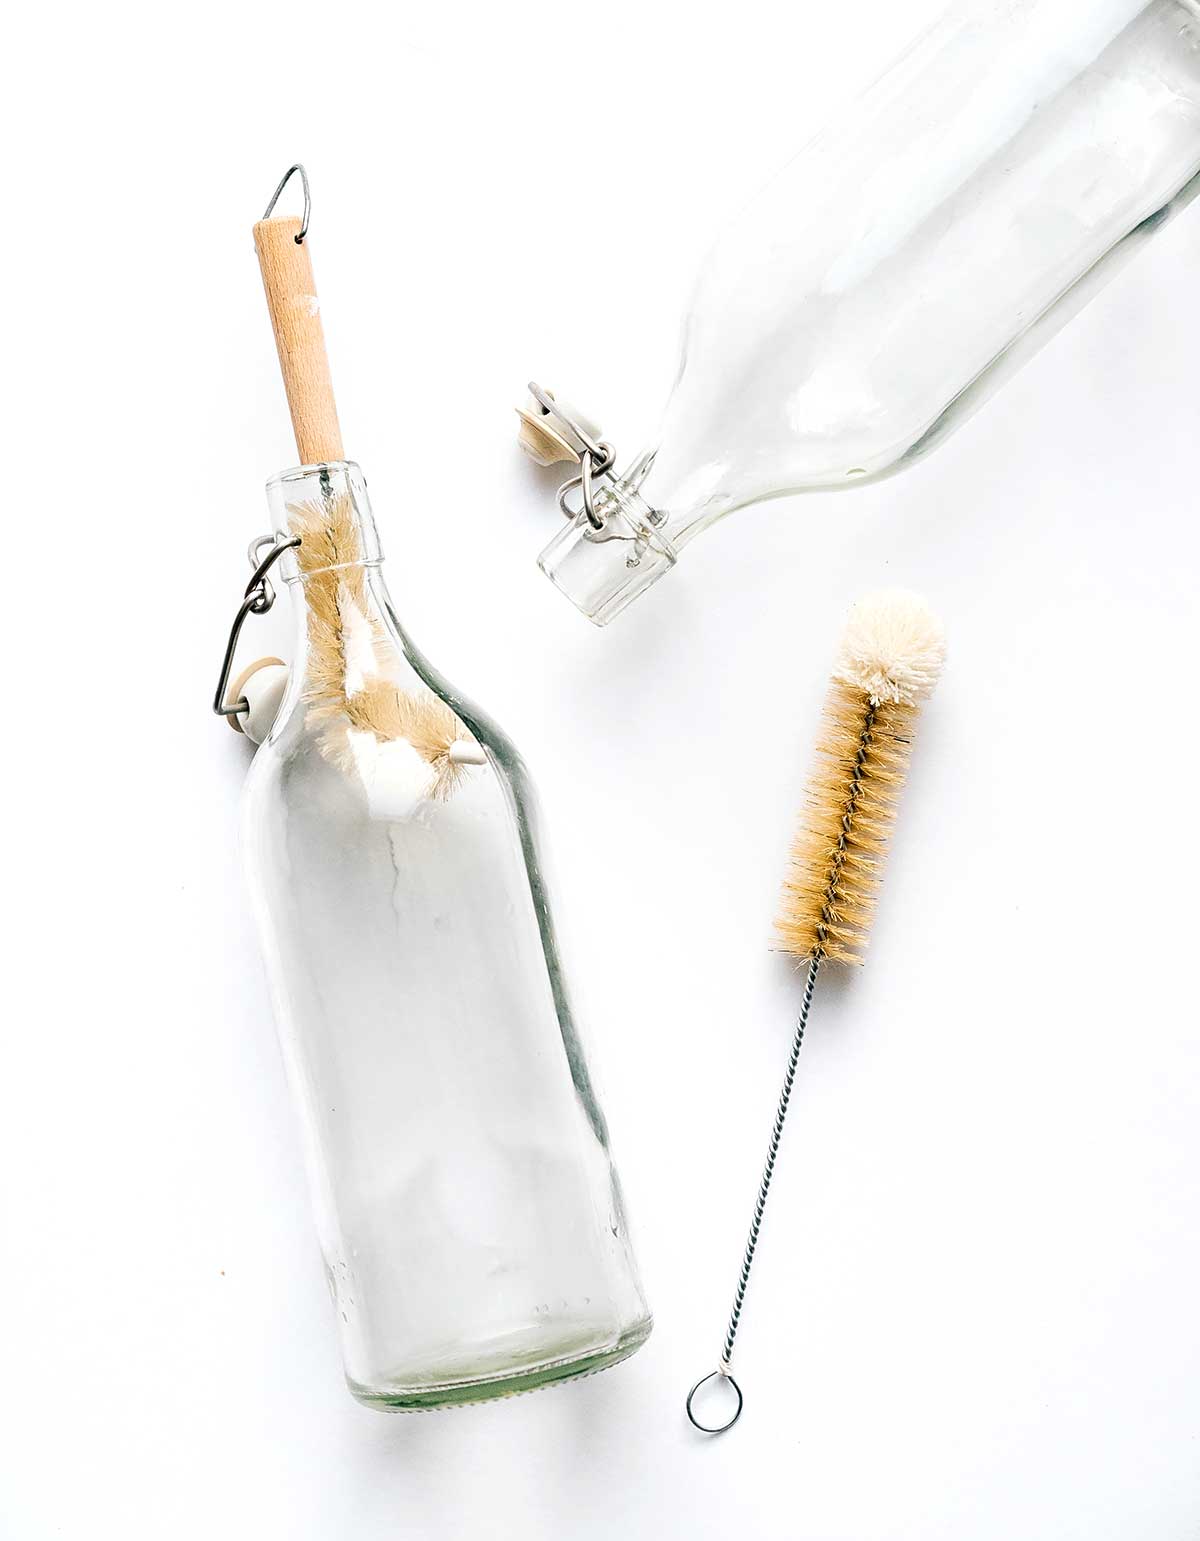 Bottle brushes to clean kombucha bottles